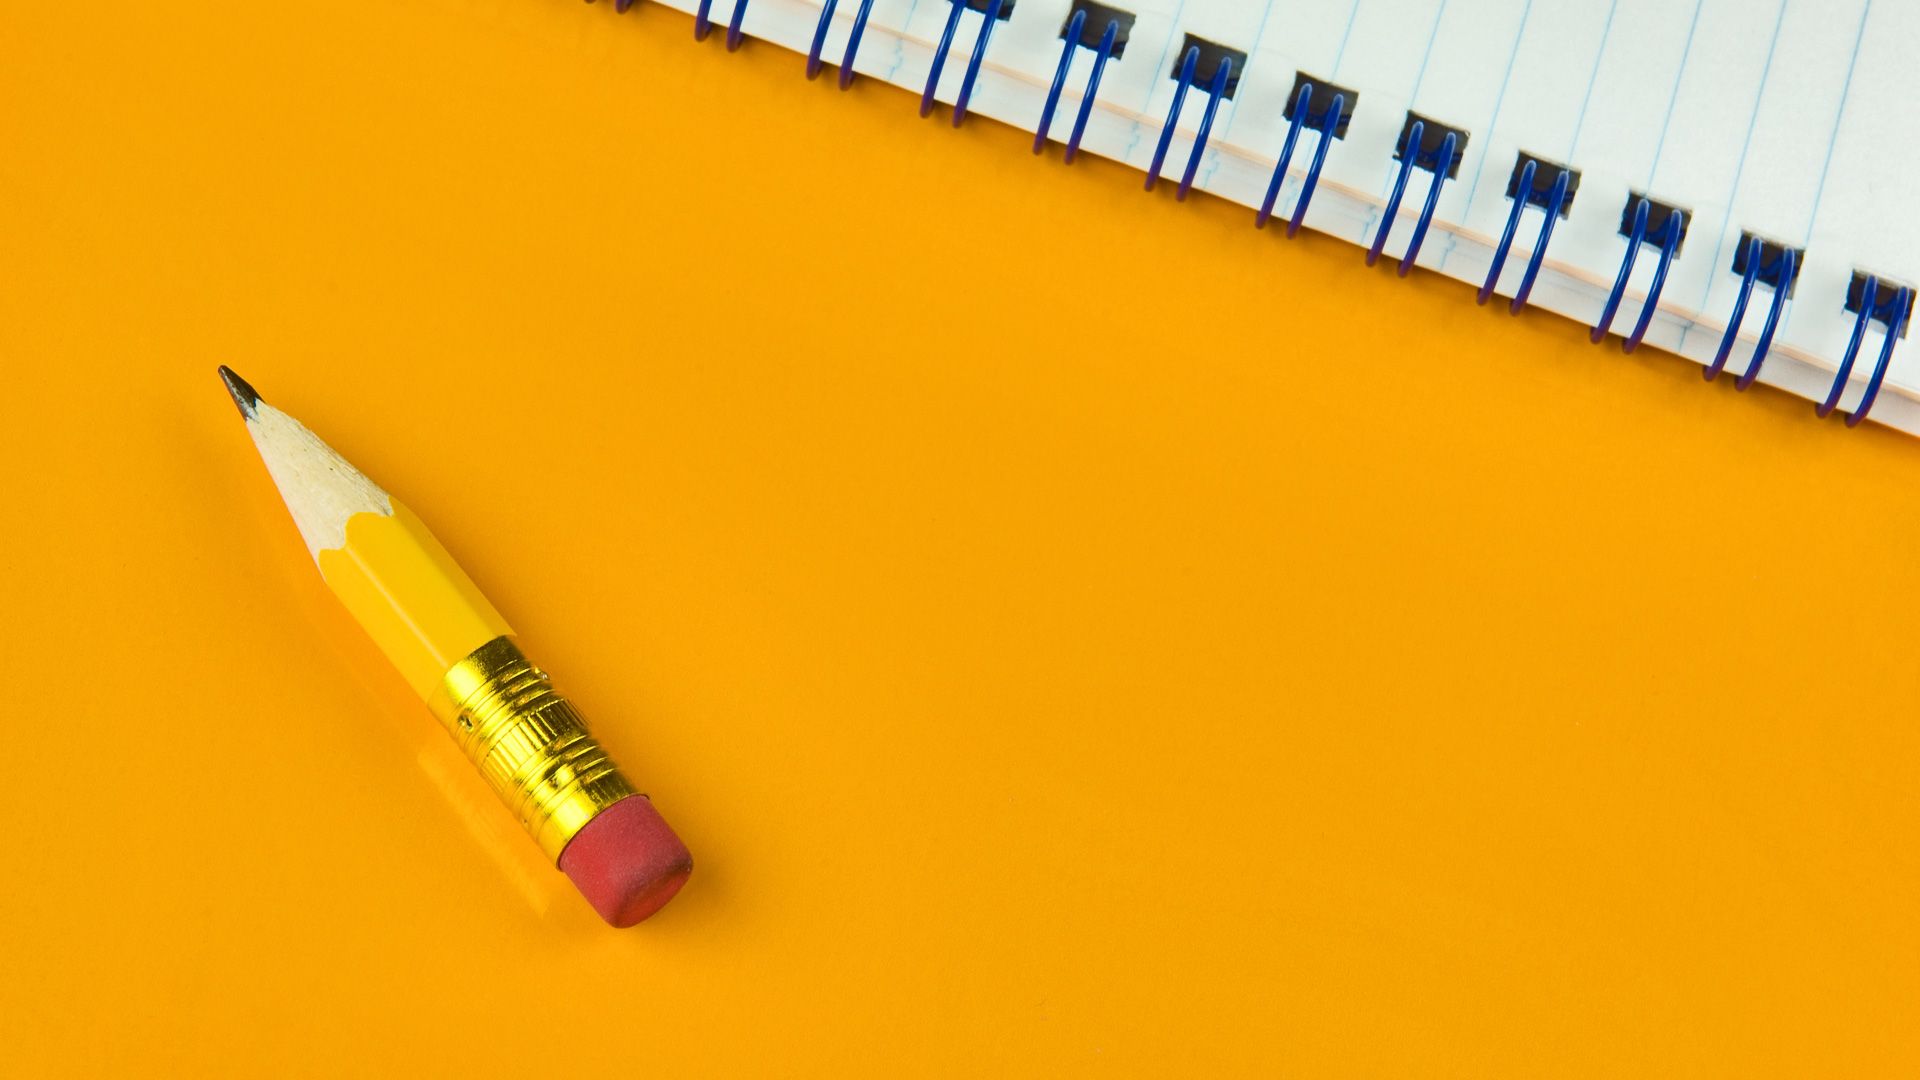 plan de papel tapiz,amarillo,lápiz,material de oficina,implemento de escritura,colorido